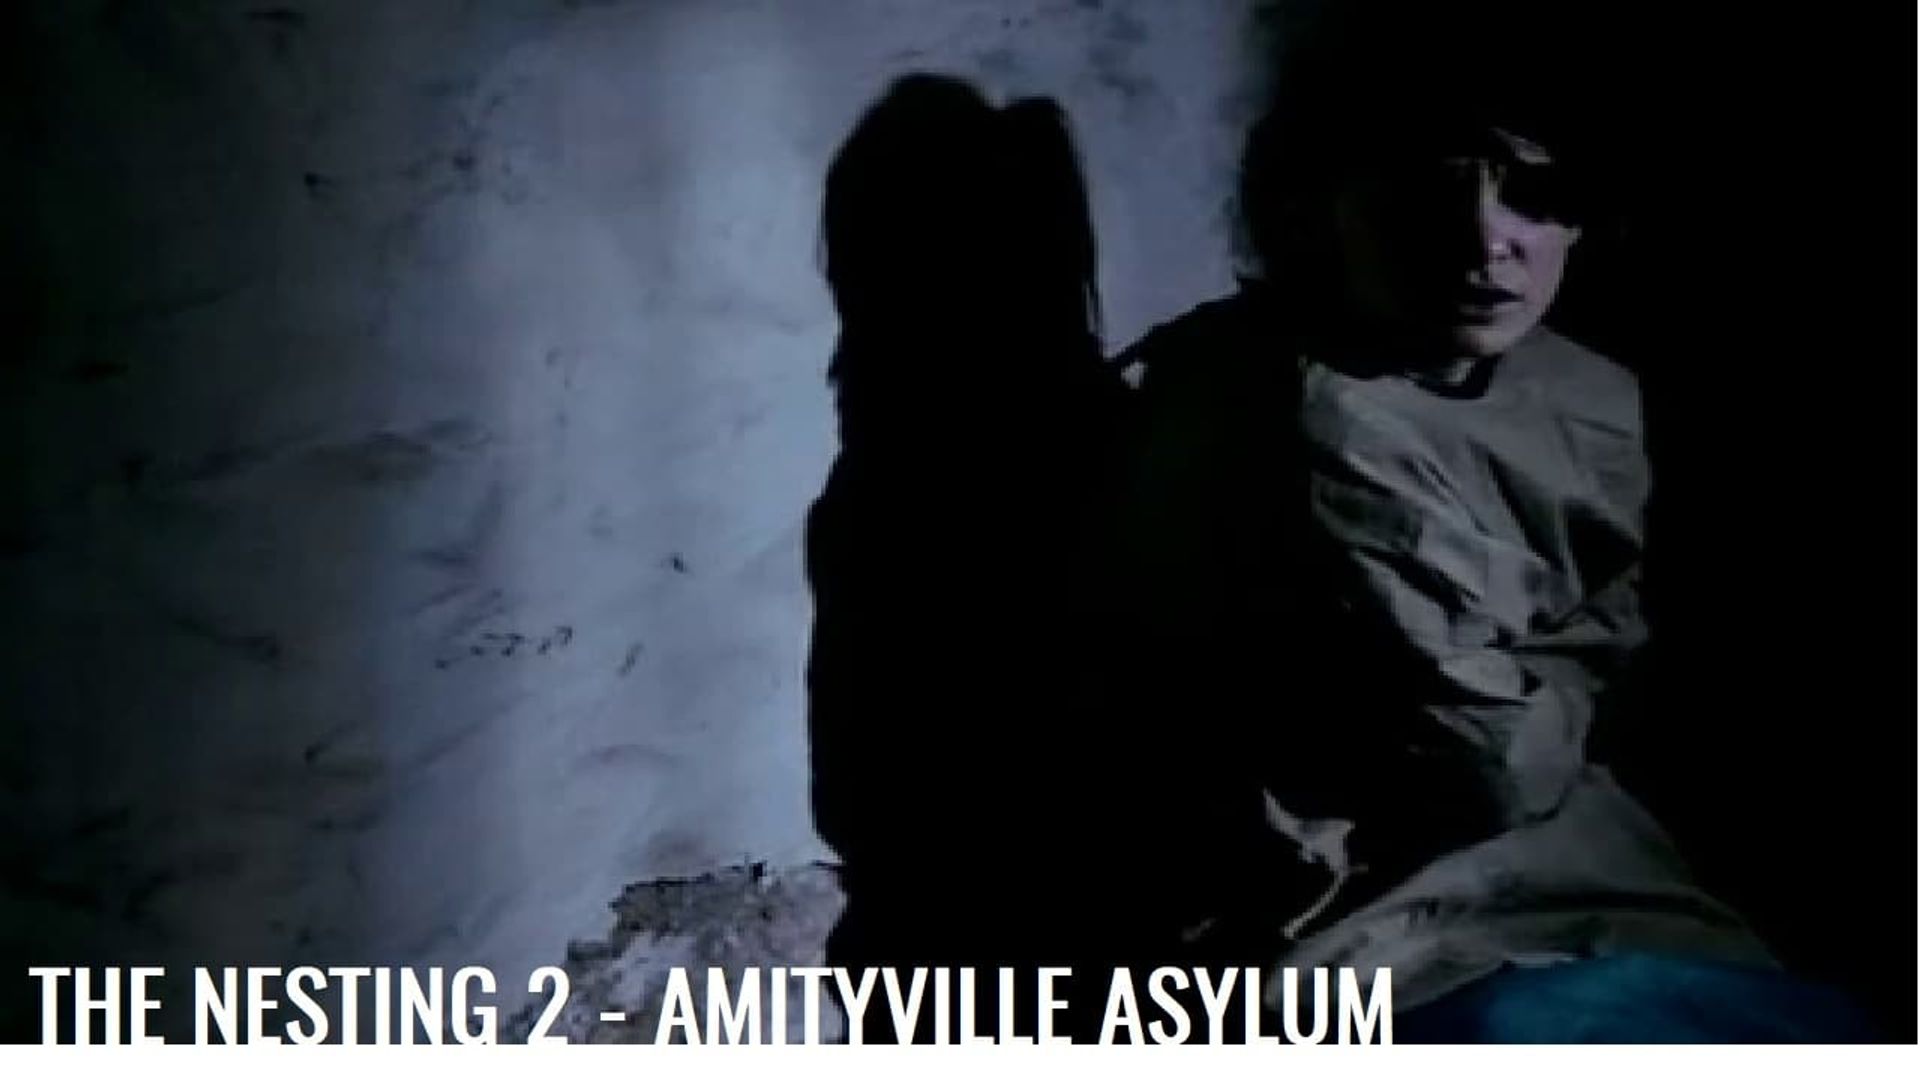 The Amityville Asylum background